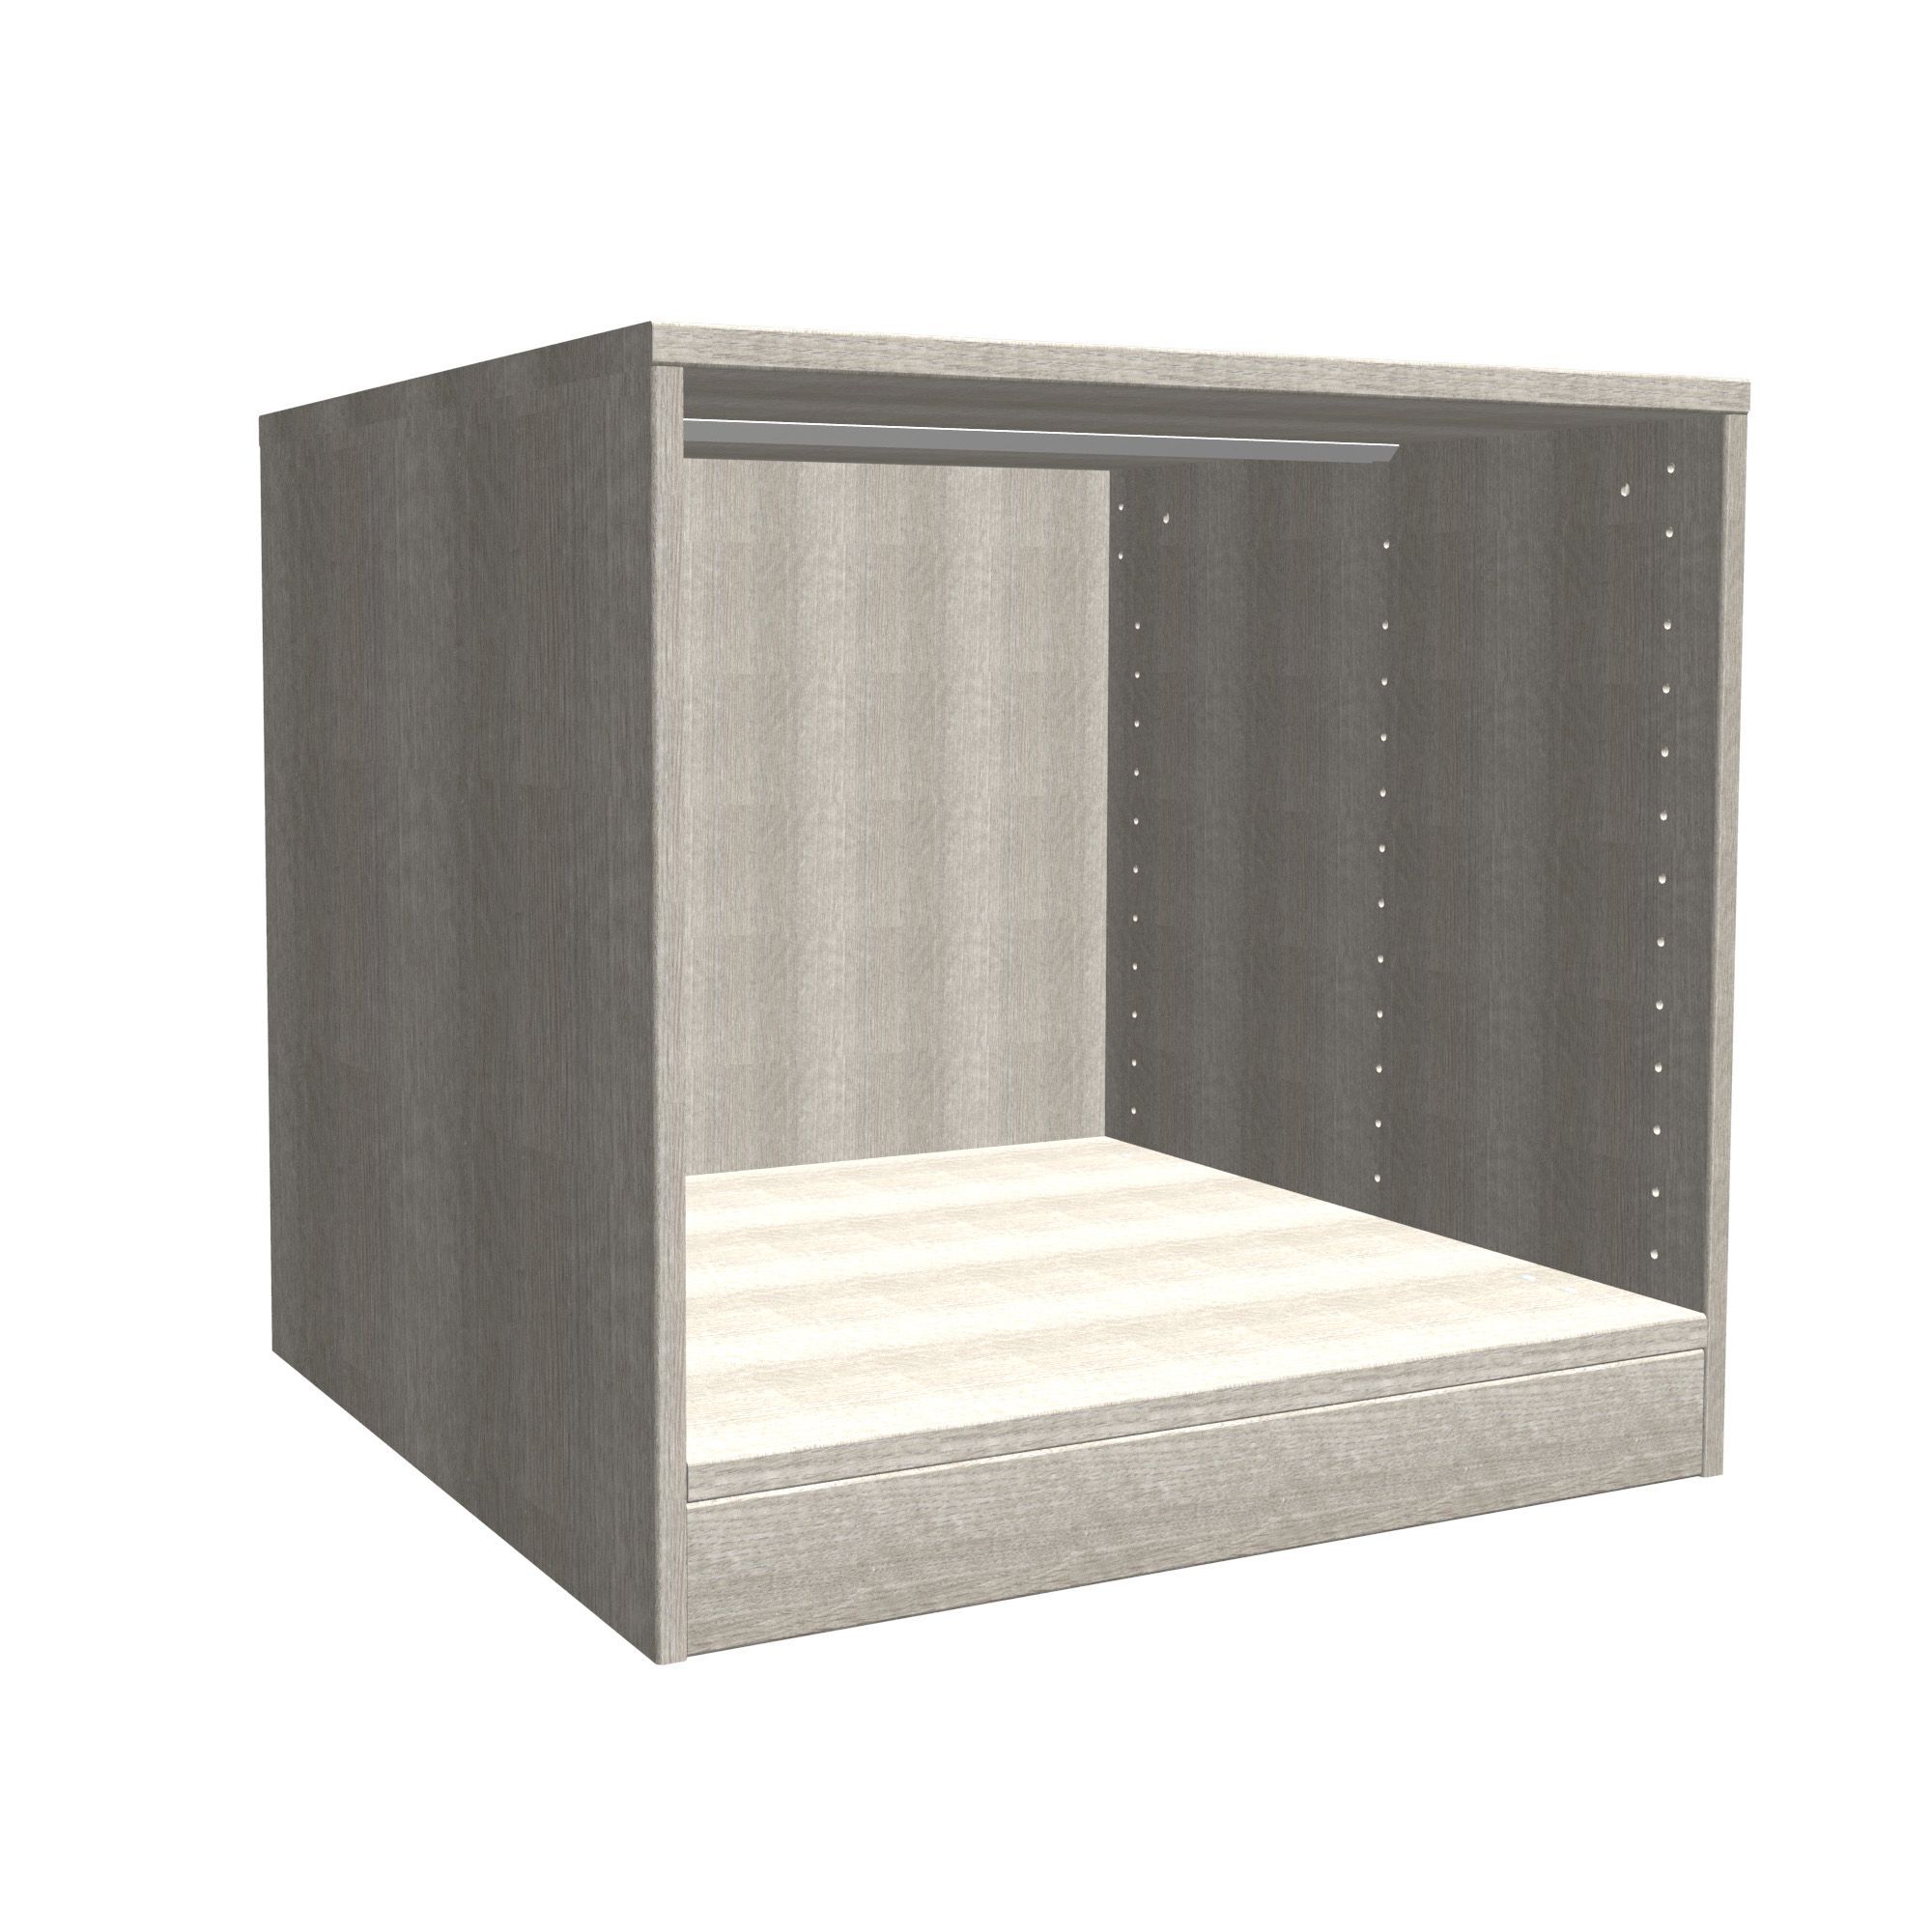 Form Darwin Grey oak effect Bedside cabinet (H)546mm (W)500mm (D)566mm